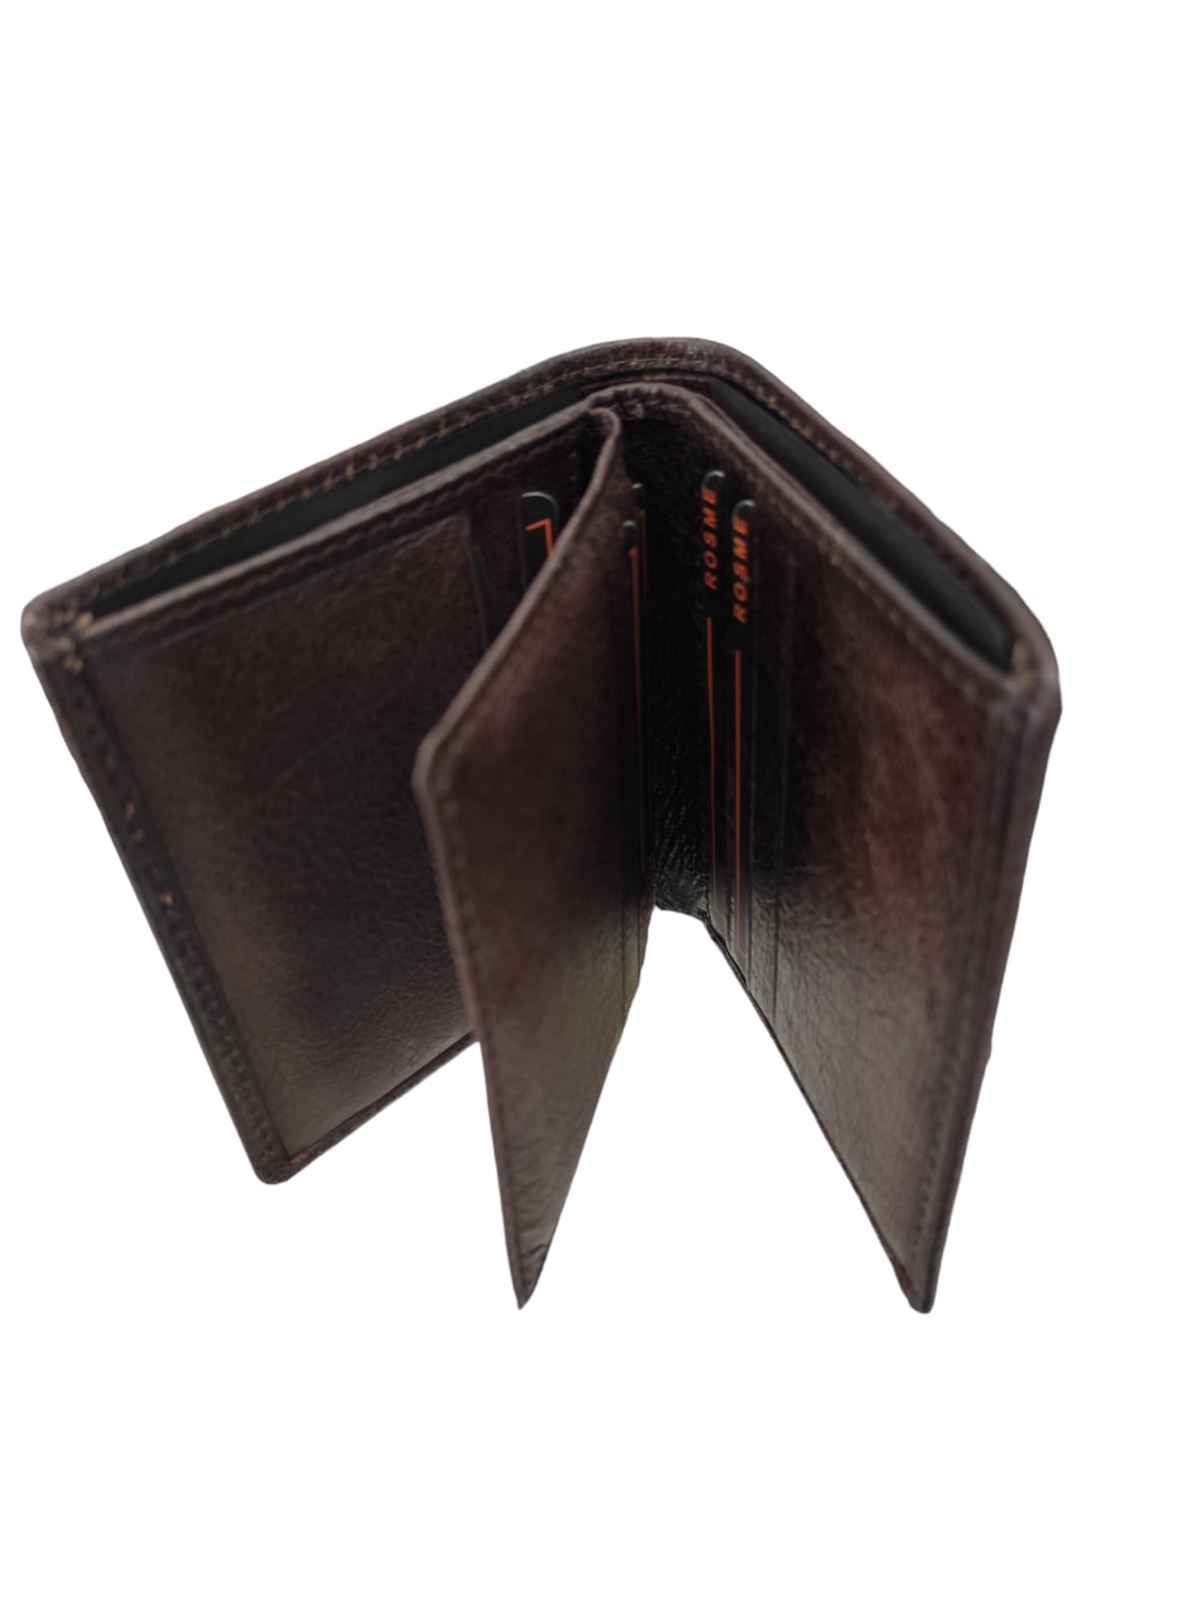 Billetera de hombre marrón sin monedero - Imagen 2